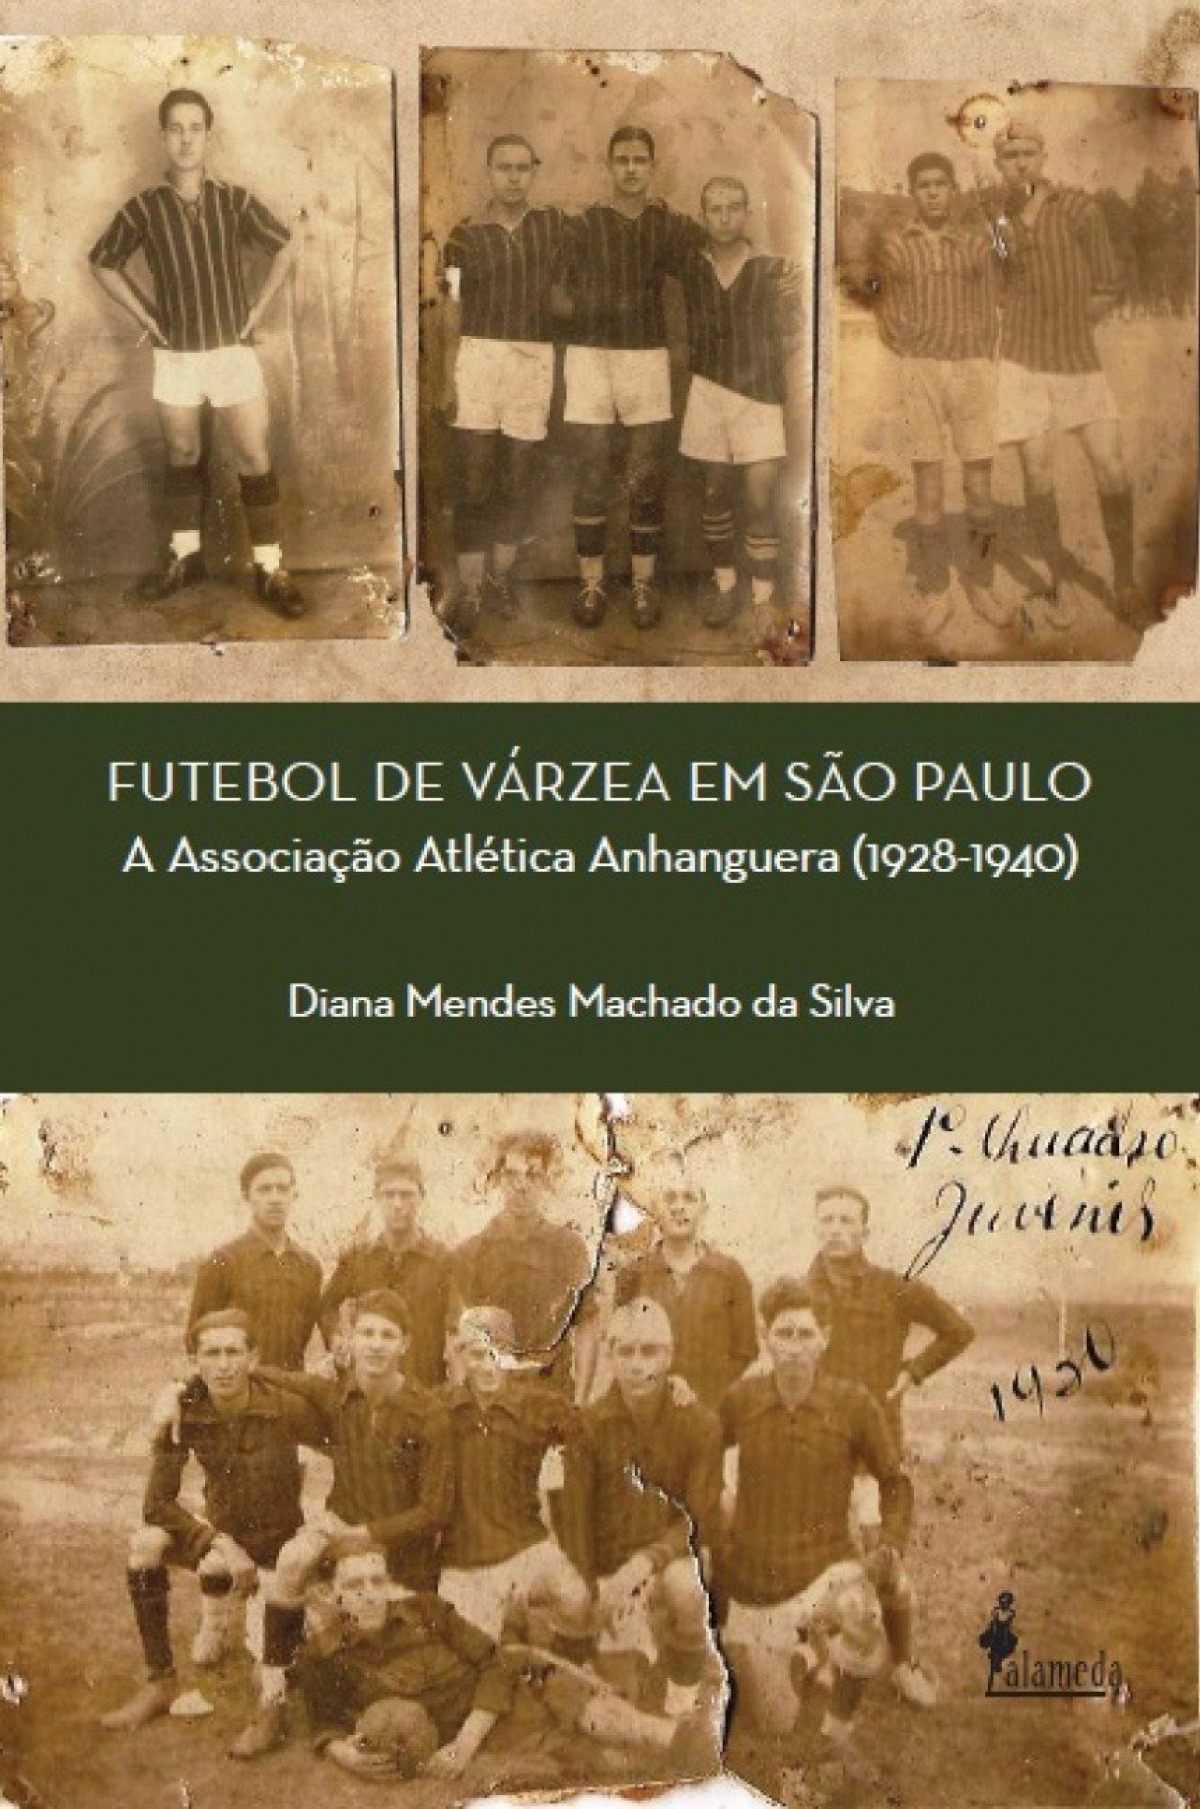 Futebol de várzea em São Paulo - Diana Mendes Machado da Silva